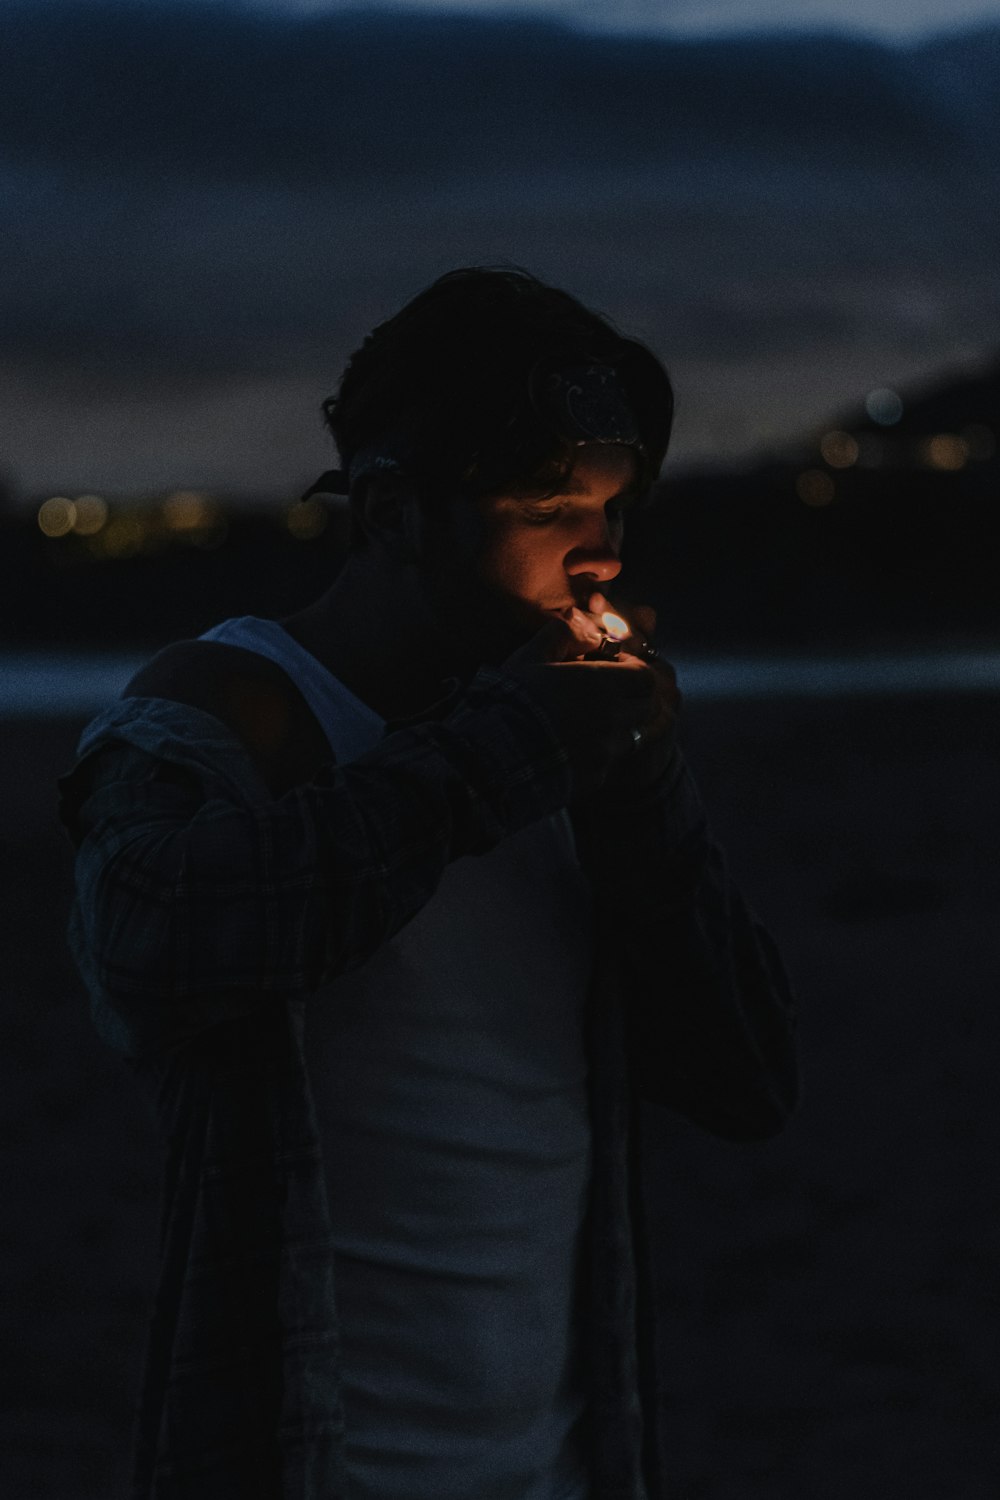 man in black jacket smoking cigarette during night time